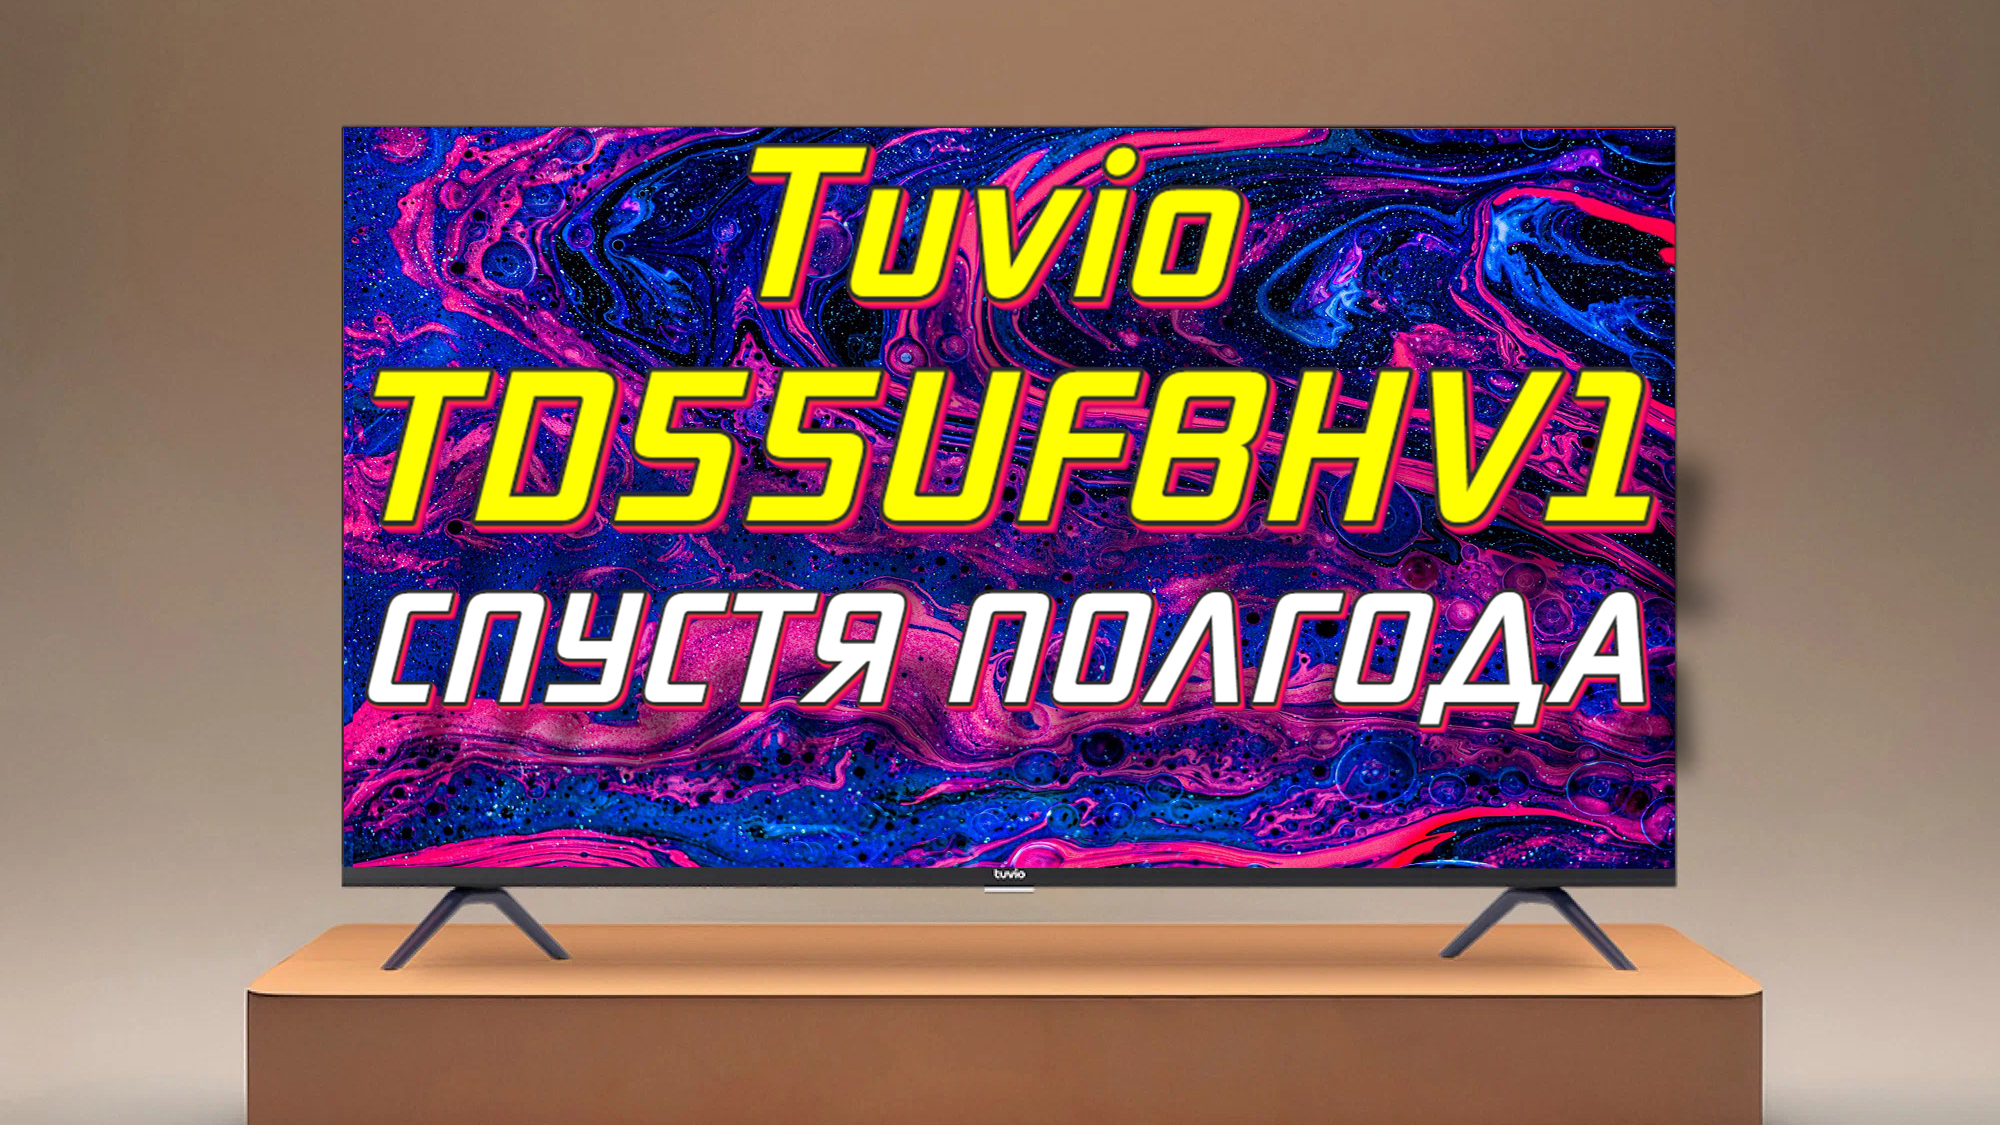 Телевизор Tuvio TD55UFGHV1 СТОИТ ЛИ БРАТЬ